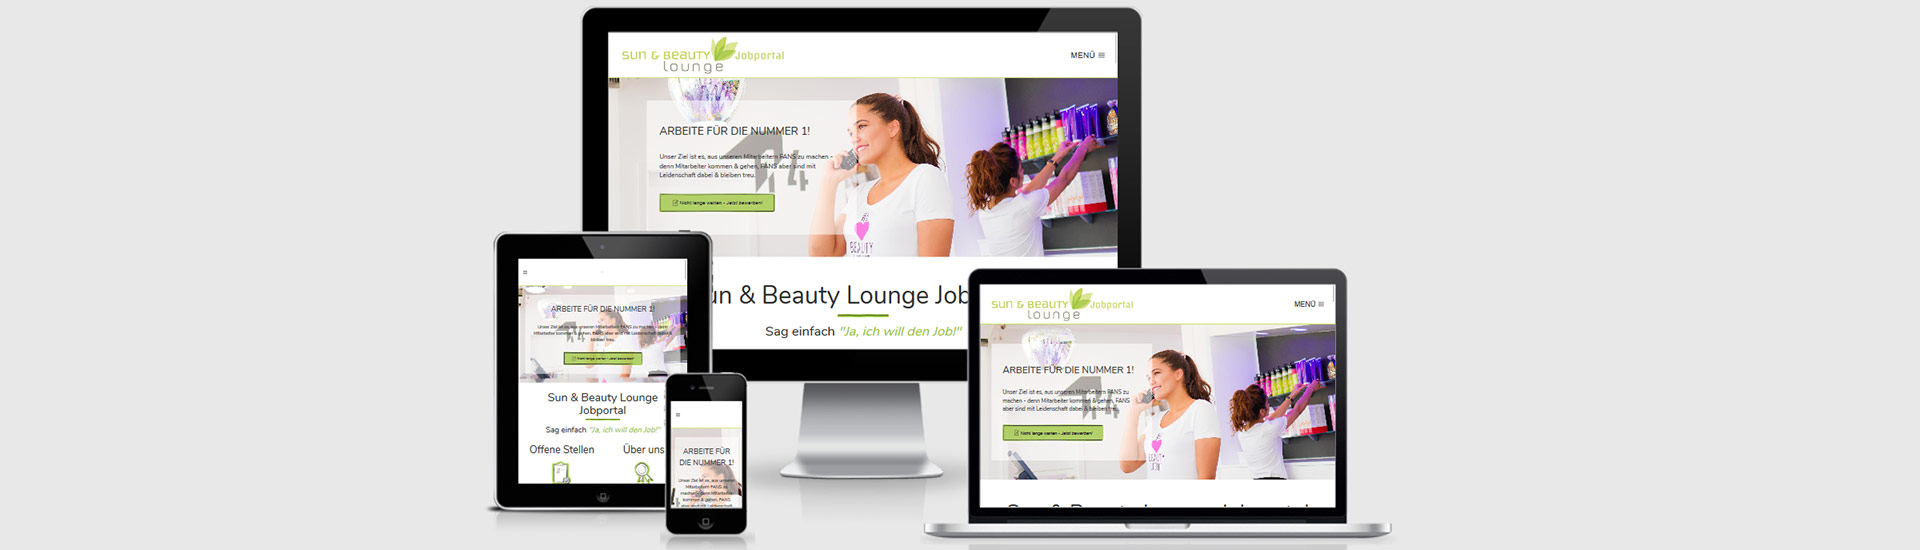 suchmaschinenoptimierung webdesign wien sun & beauty lounge jobportal header 01